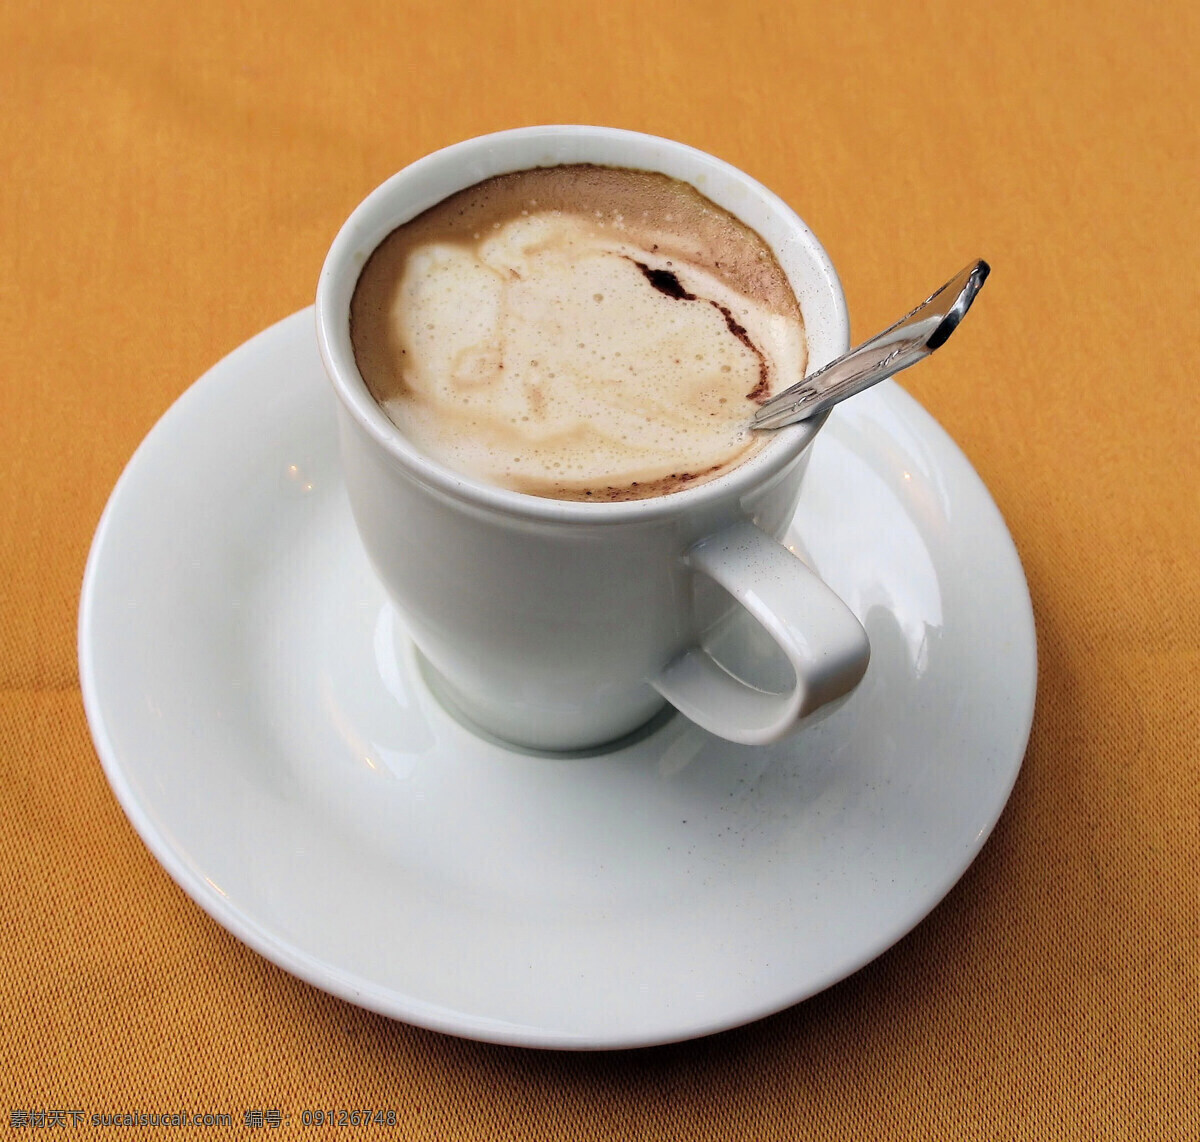 浓香 咖啡 清纯正浓 可口美味 提神 杯子 陶瓷 精品 珍贵 整洁美观 勺子 喝咖啡 高雅 高清图片 咖啡图片 餐饮美食